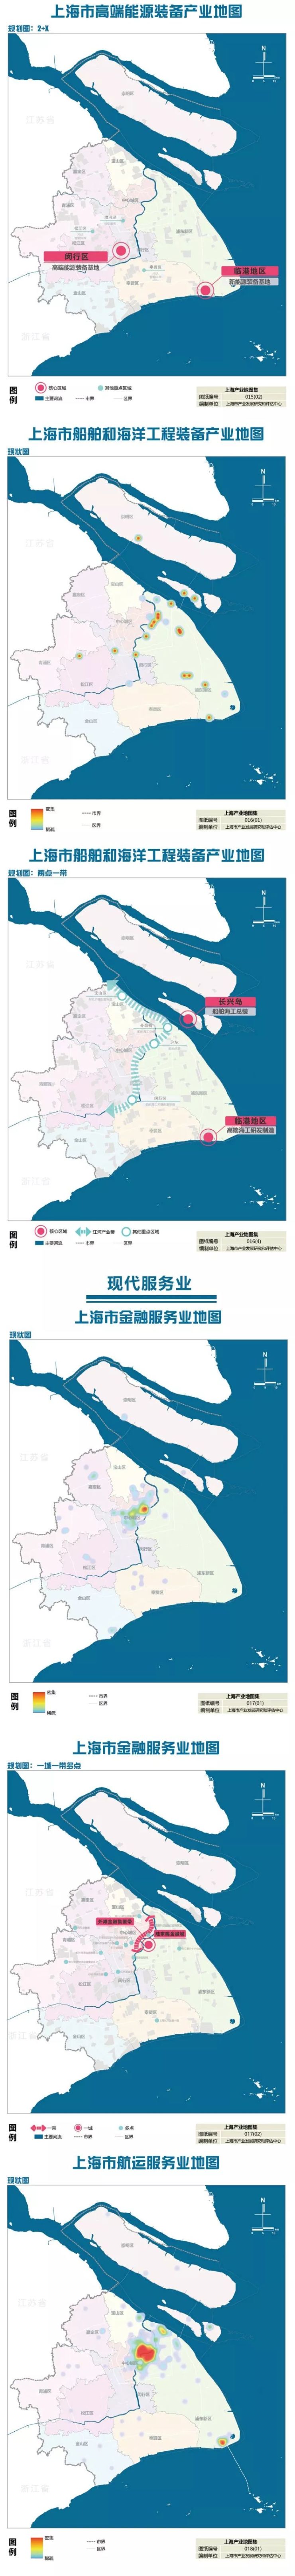 《上海市产业地图》正式出炉：未来产业发展的布局图、作战图(图7)